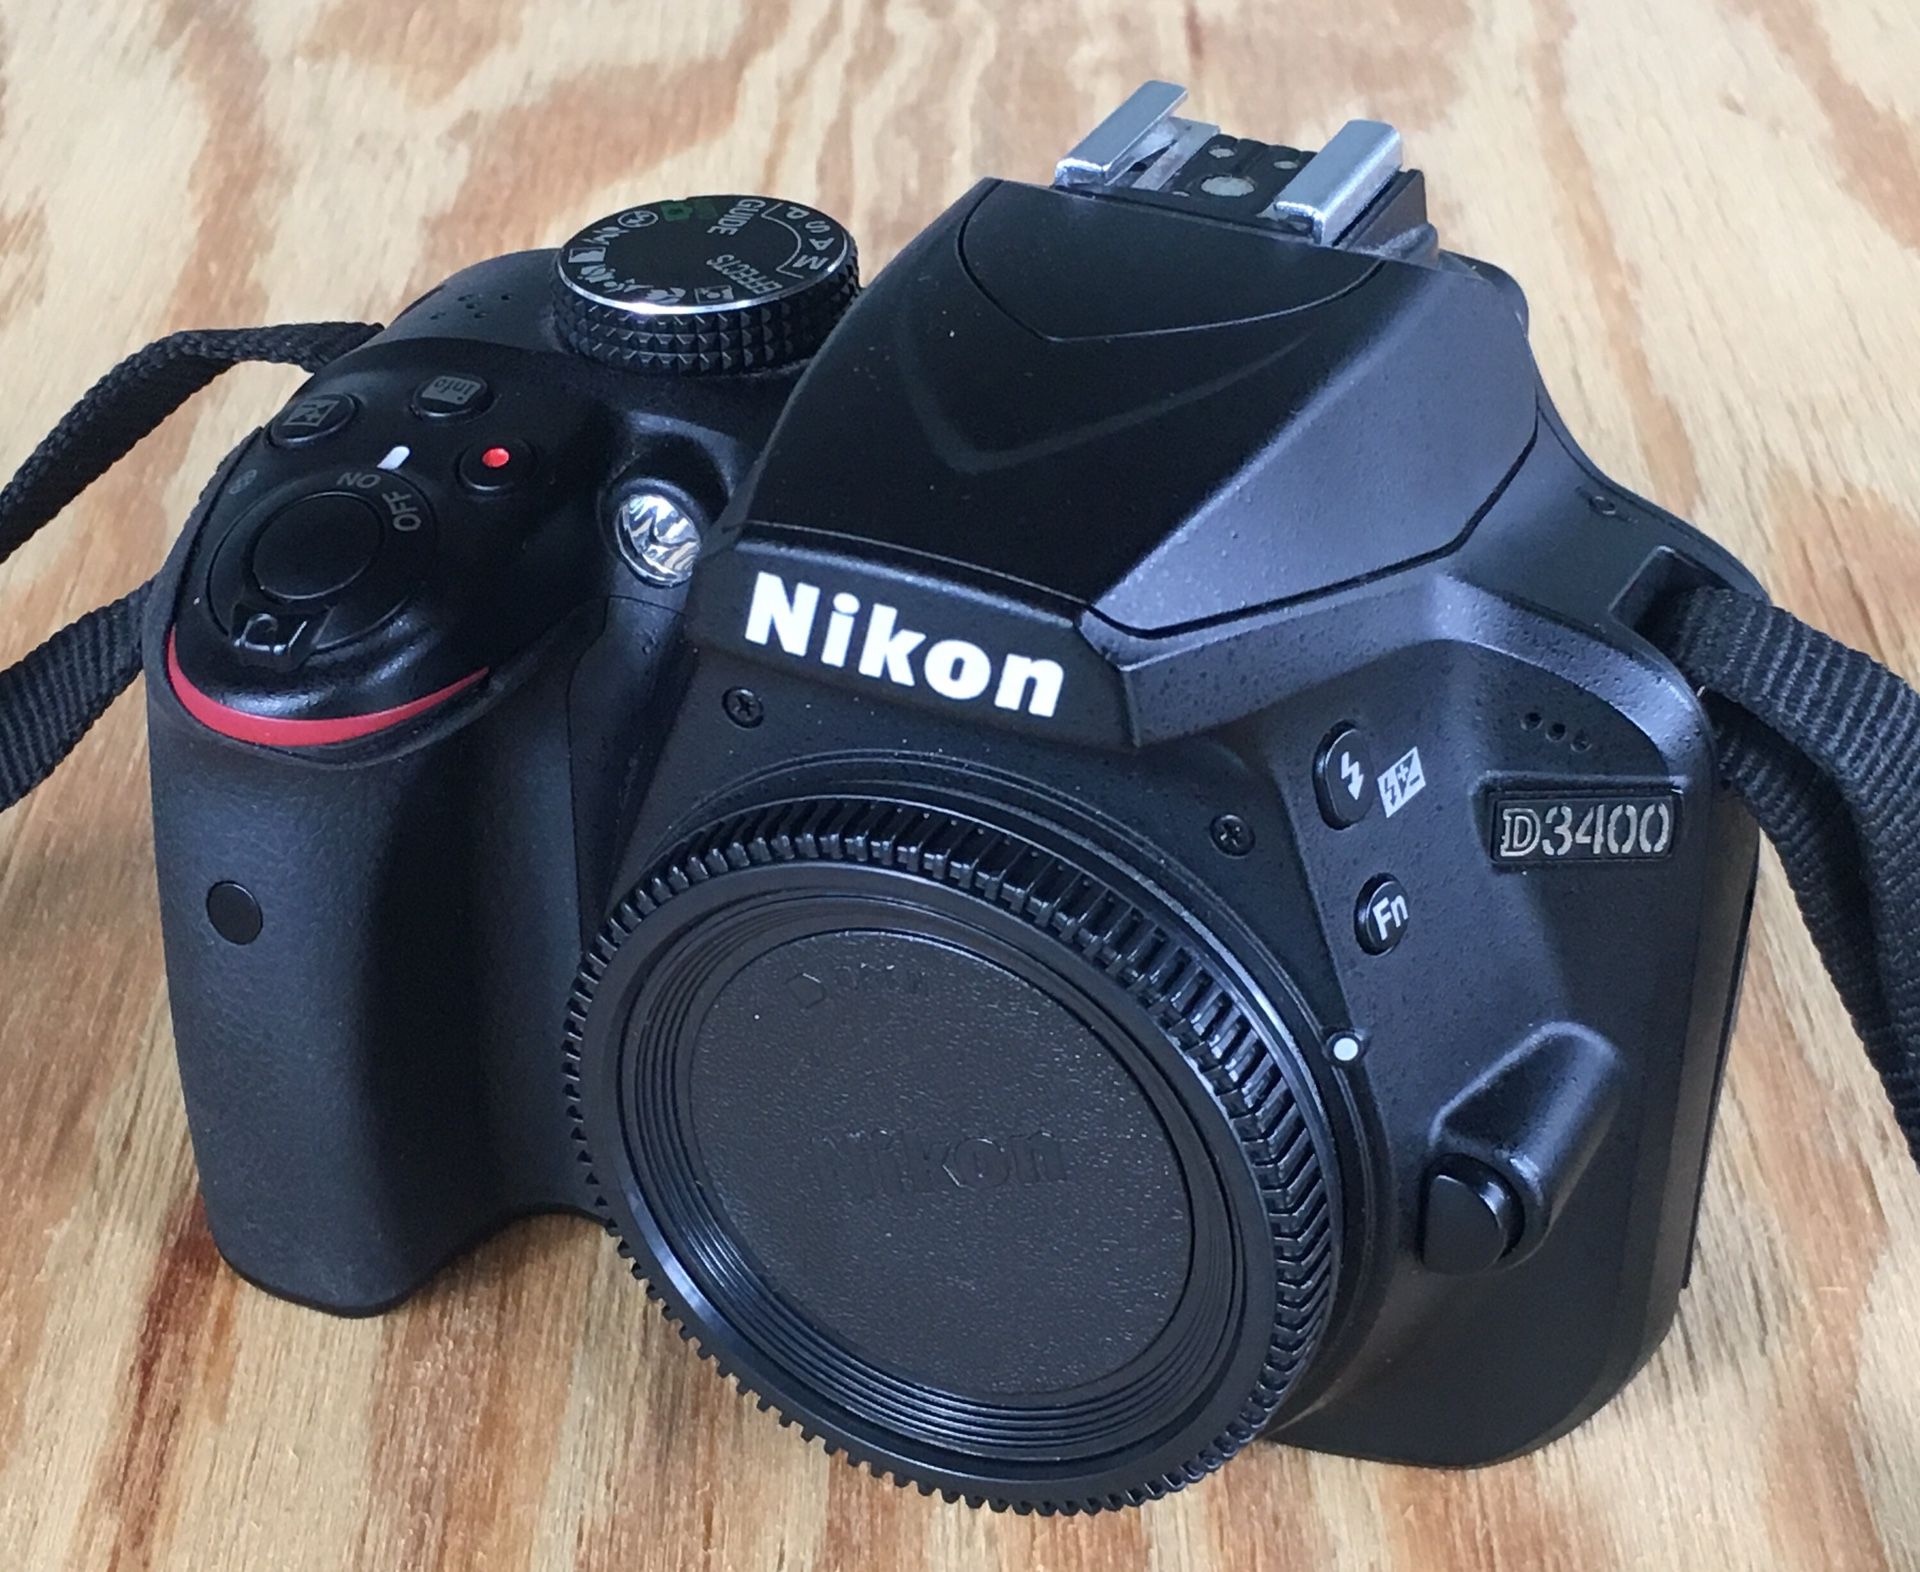 Nikon D3400 DSLR Camera - Like New!